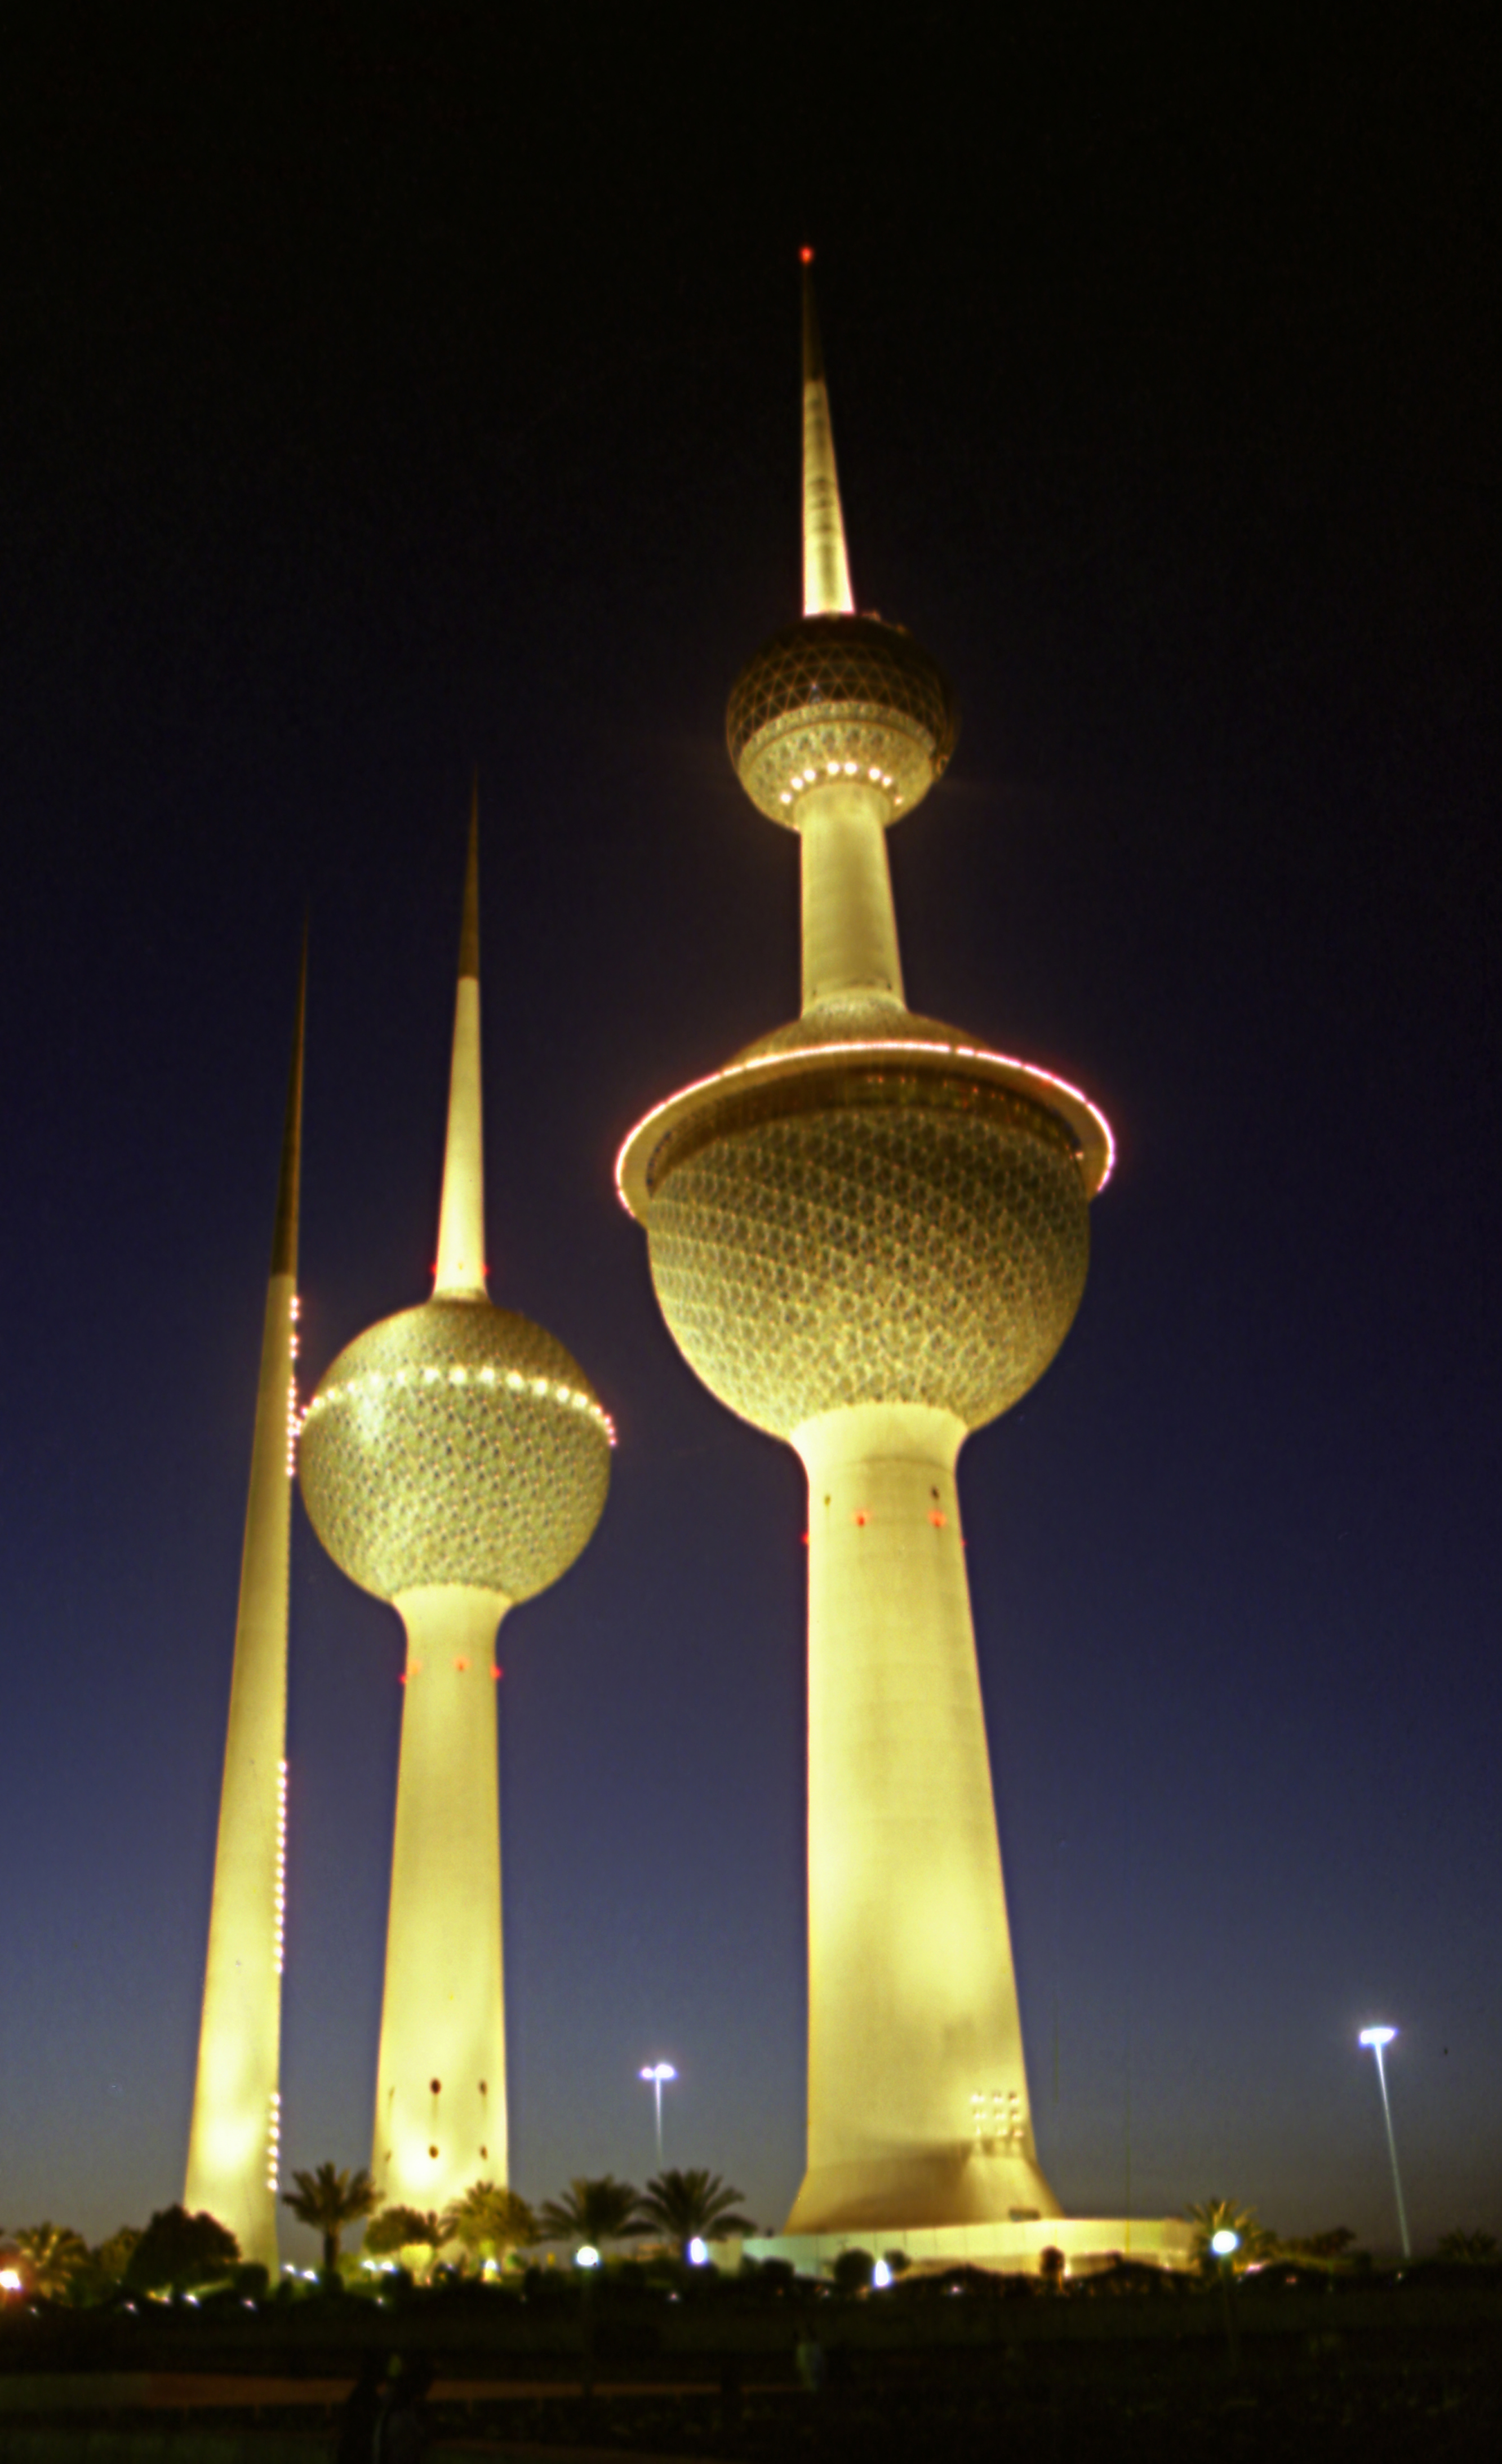 ابراج الكويت من المعالم السياحية والثقافية والحضارية المميزة في البلاد